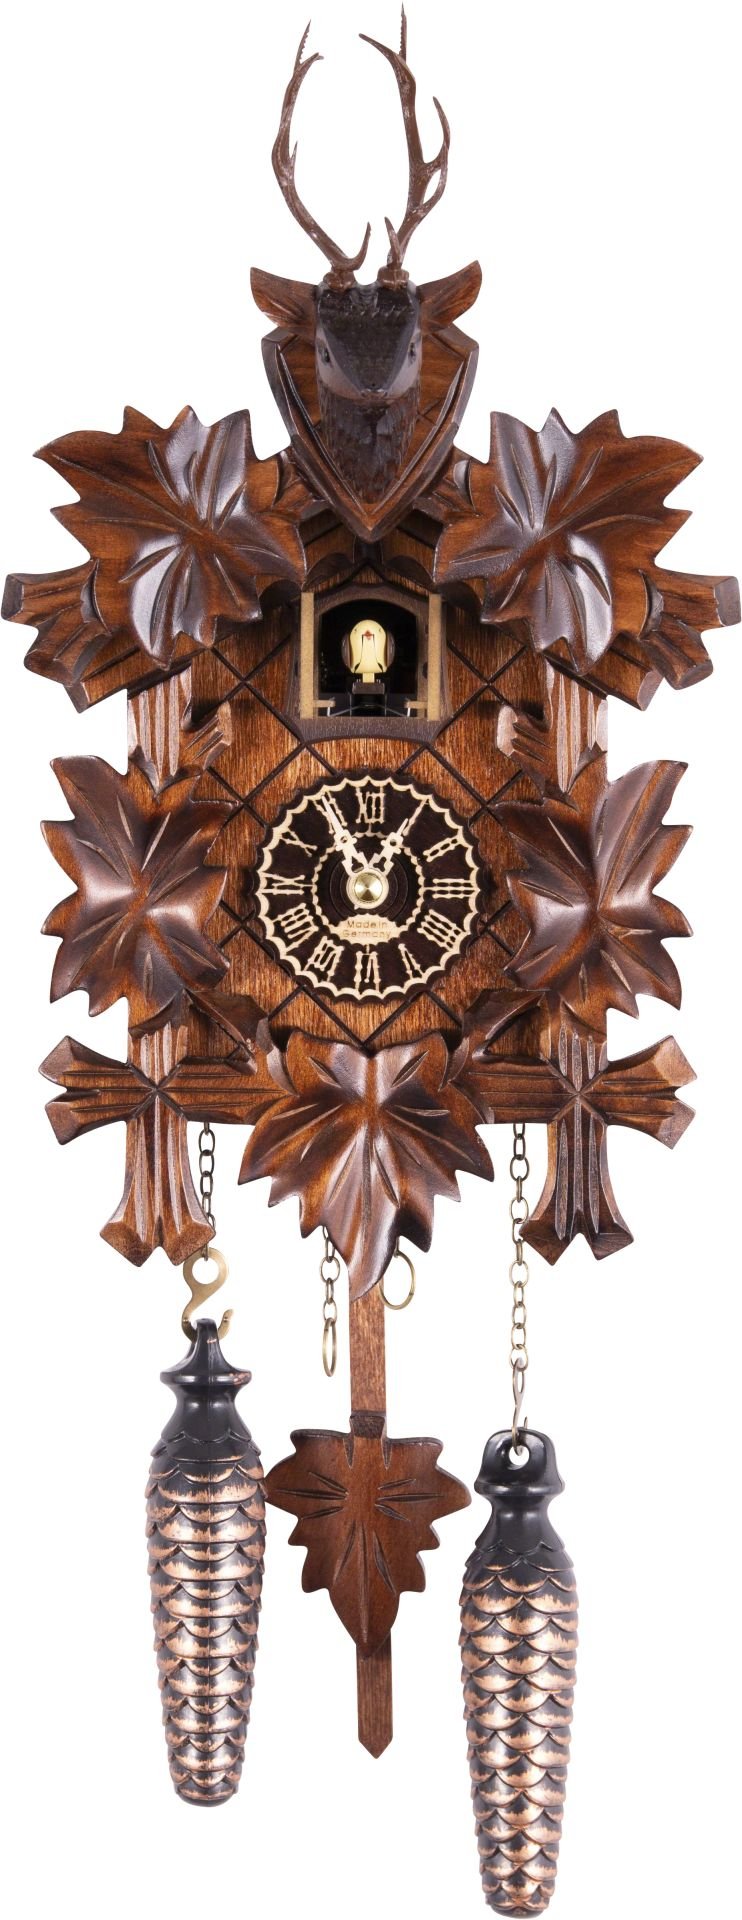 Kuckucksuhr geschnitzt Quarz-Uhrwerk 23cm von Trenkle Uhren